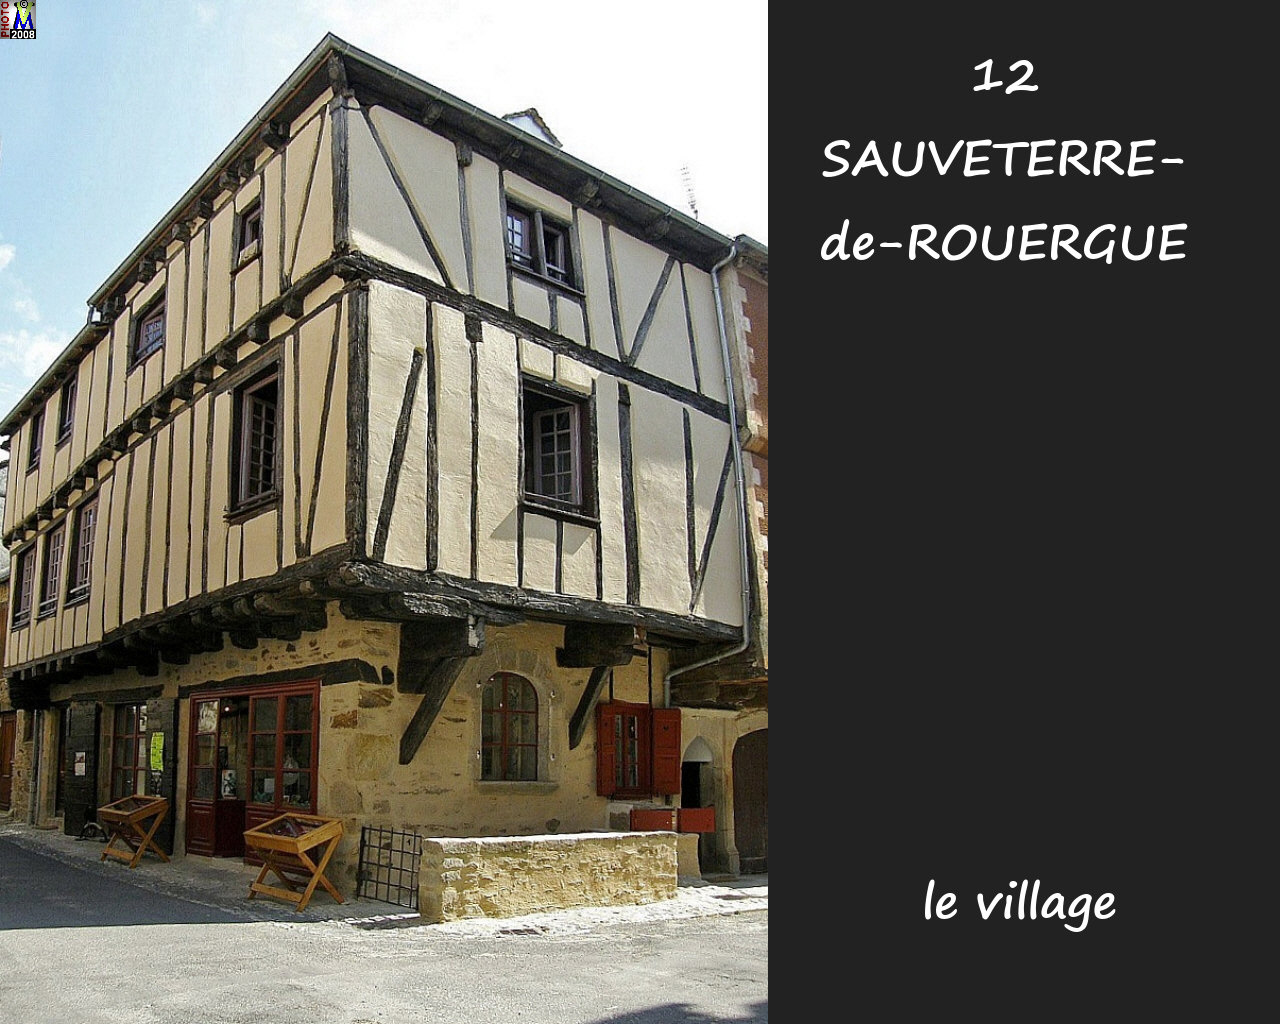 12SAUVETERRE-ROUERGUE_village_112.jpg